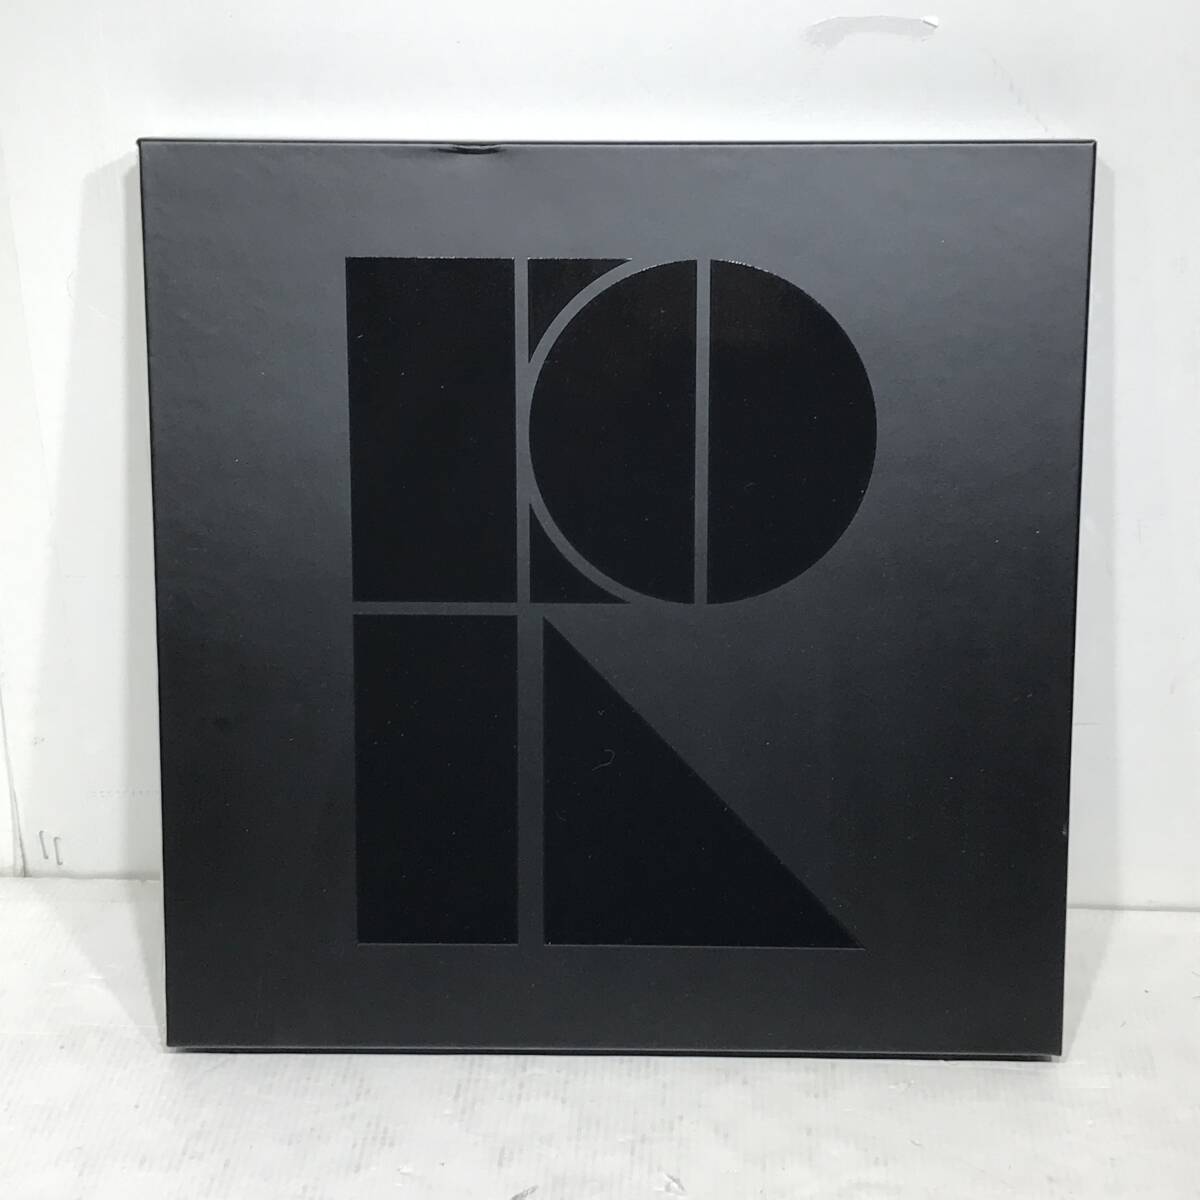 【完全受注生産盤】Perfume Complete LP BOX アナログレコードの画像1